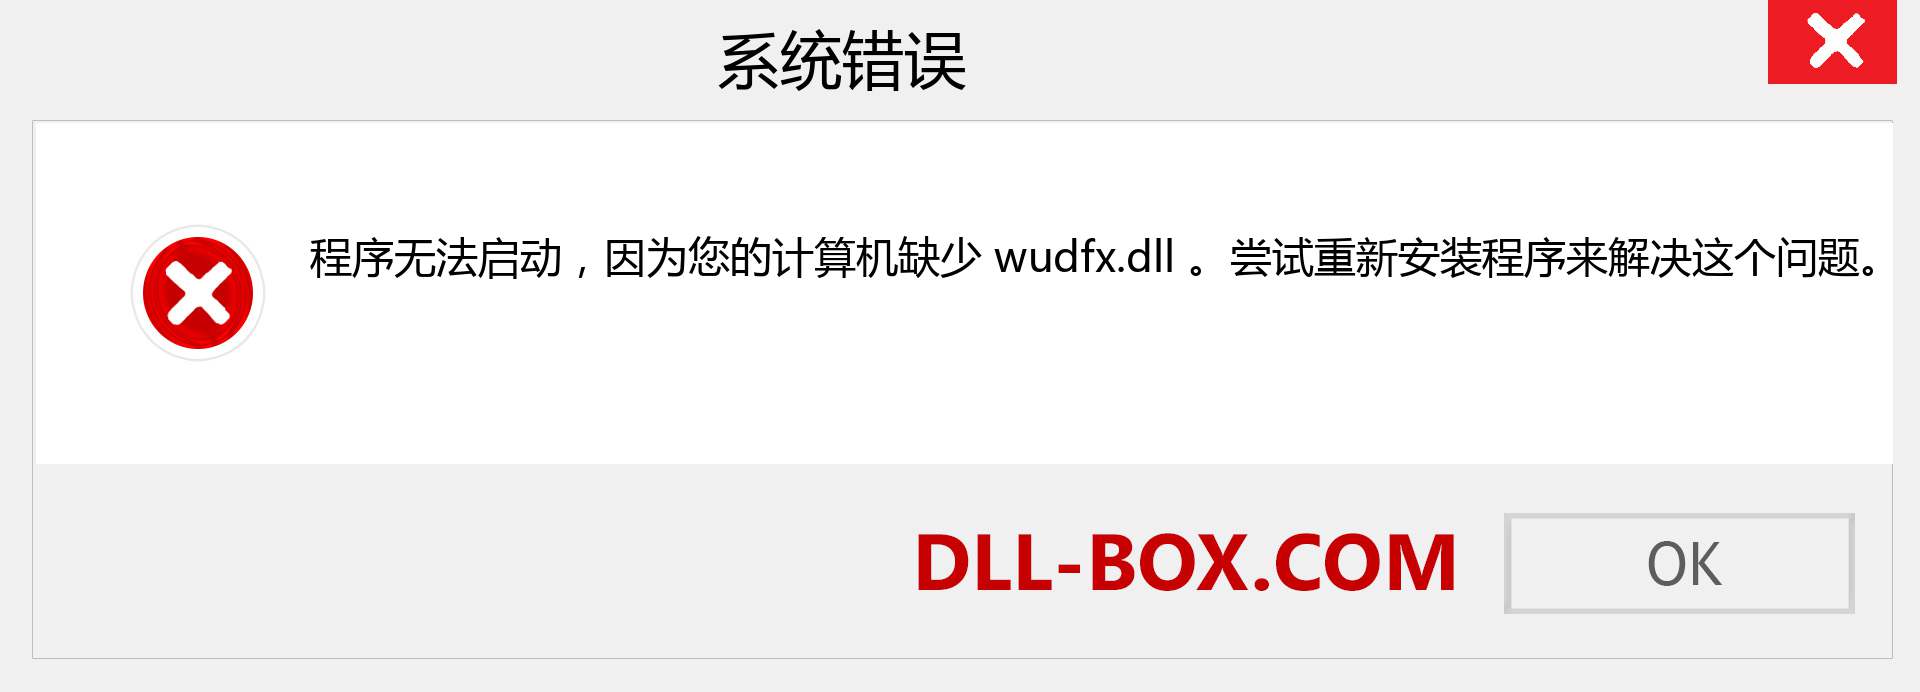 wudfx.dll 文件丢失？。 适用于 Windows 7、8、10 的下载 - 修复 Windows、照片、图像上的 wudfx dll 丢失错误